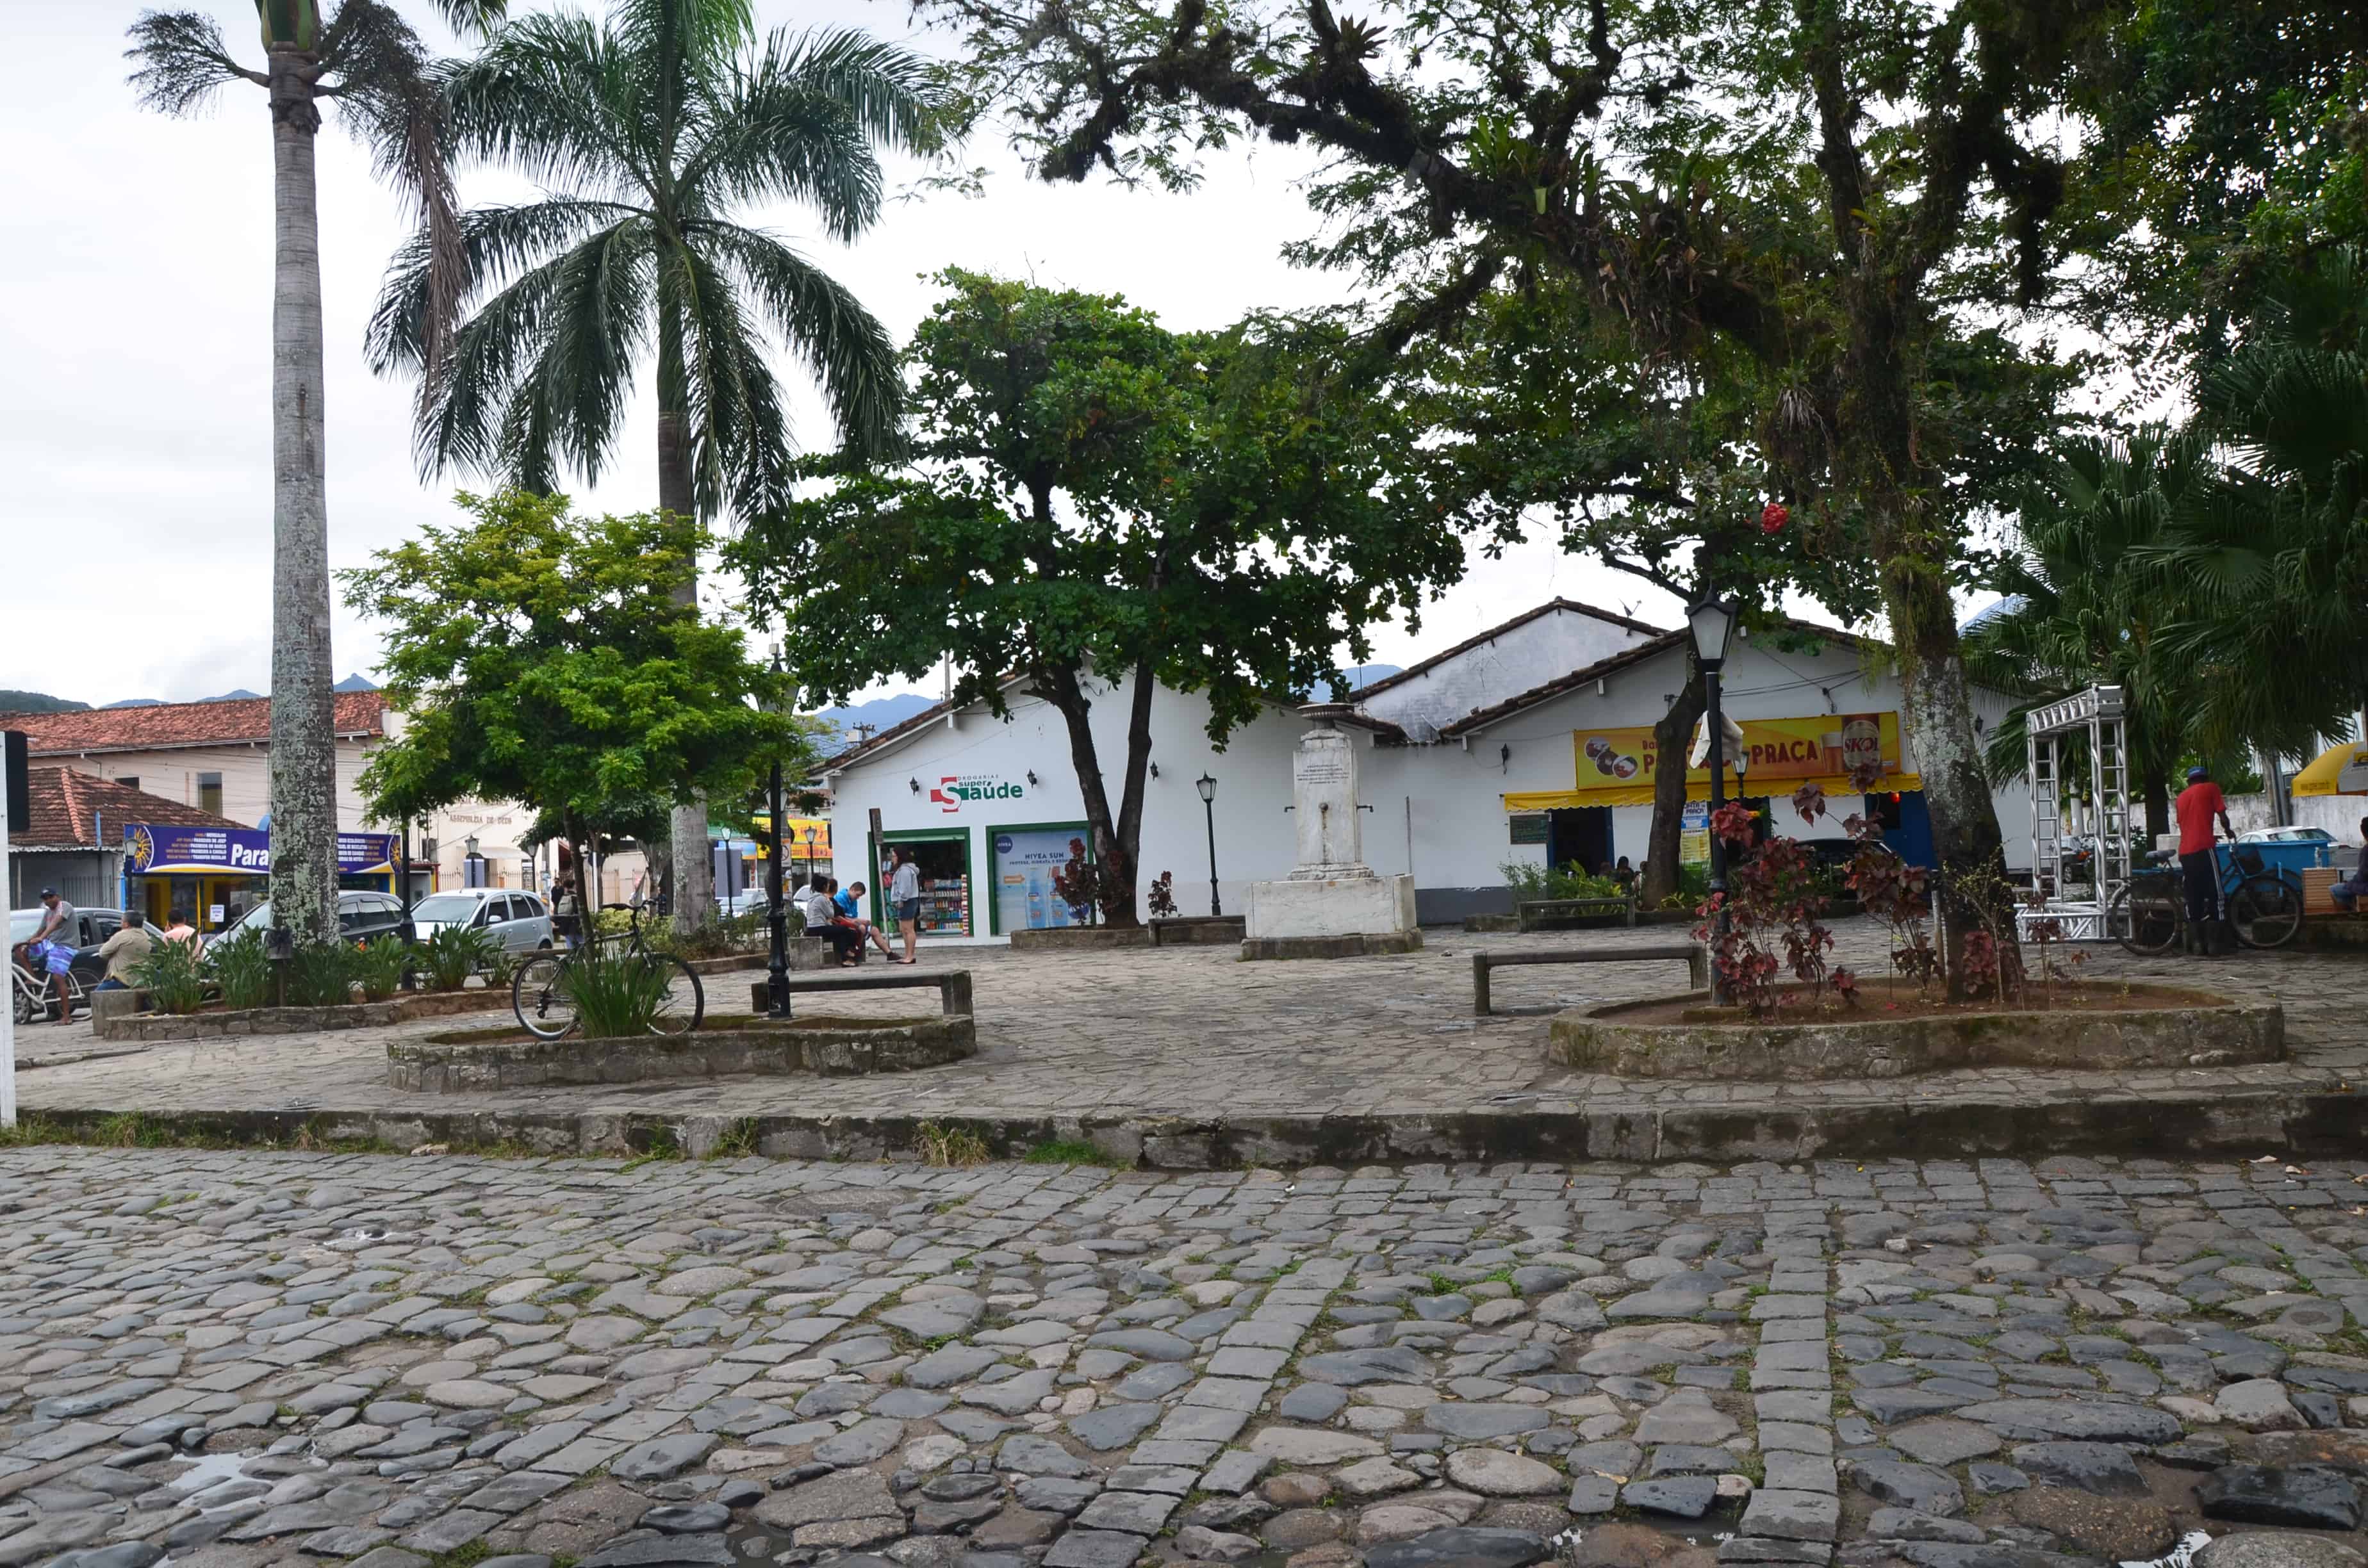 Praça do Chafariz in Paraty, Brazil